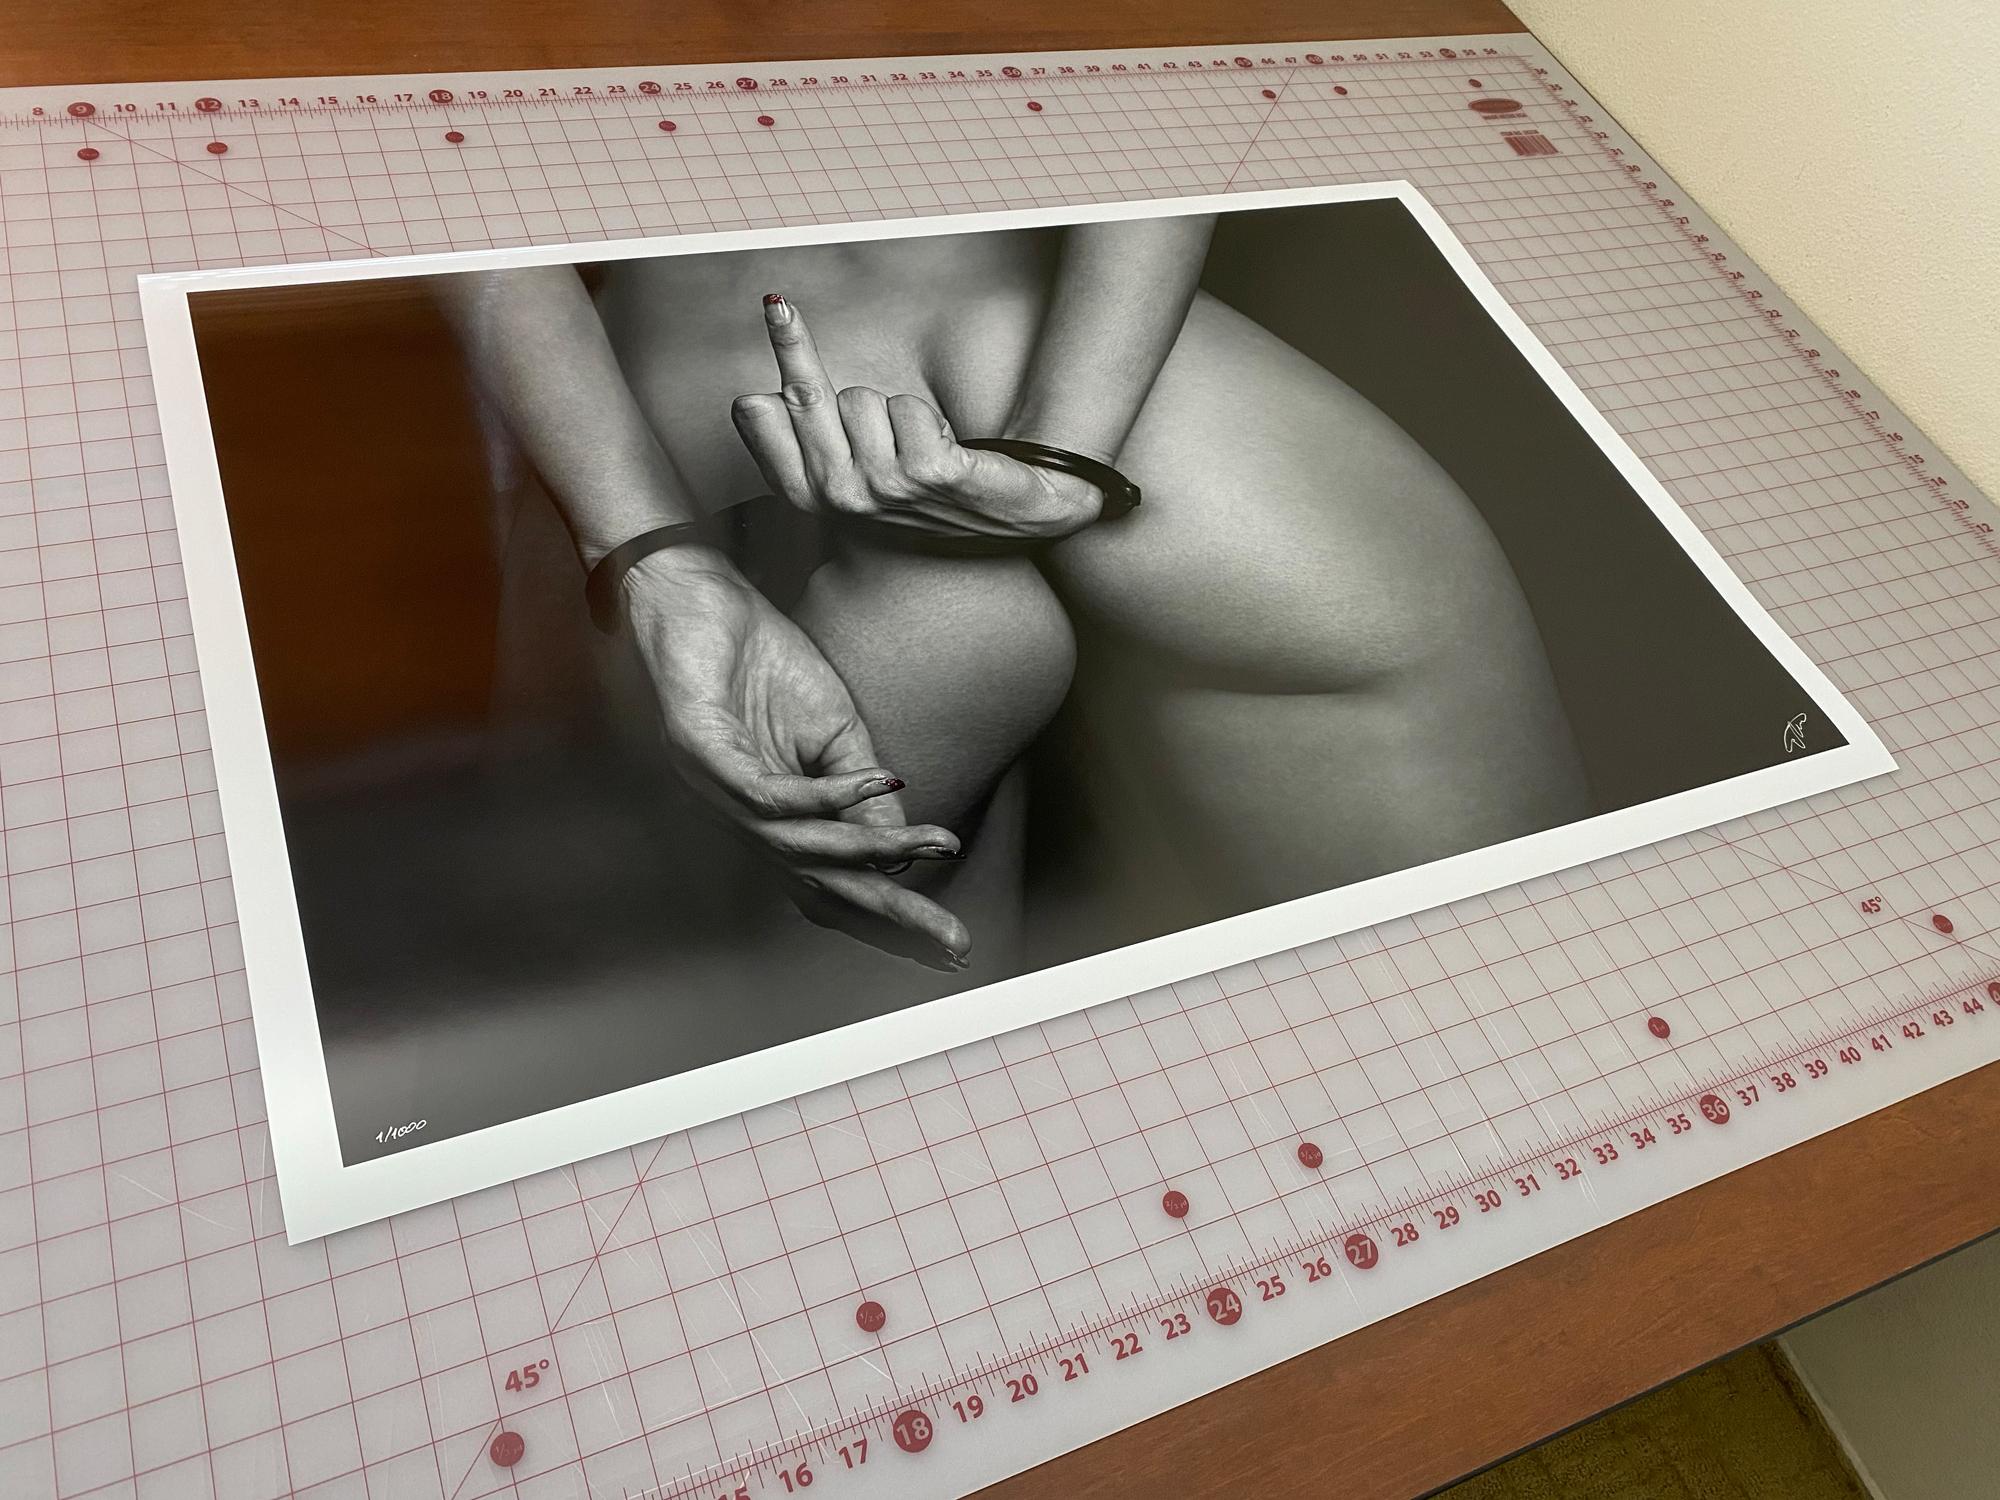 Eine Schwarz-Weiß-Fotografie, die das Gesäß einer perfekten Frau zeigt und ihre gefesselten Hände, die den Finger zeigen.

Original-Pigmentdruck in Galeriequalität, vom Künstler signiert. 
Limitierte Auflage von 1000 Stück. Druck #6.
Papierformat: